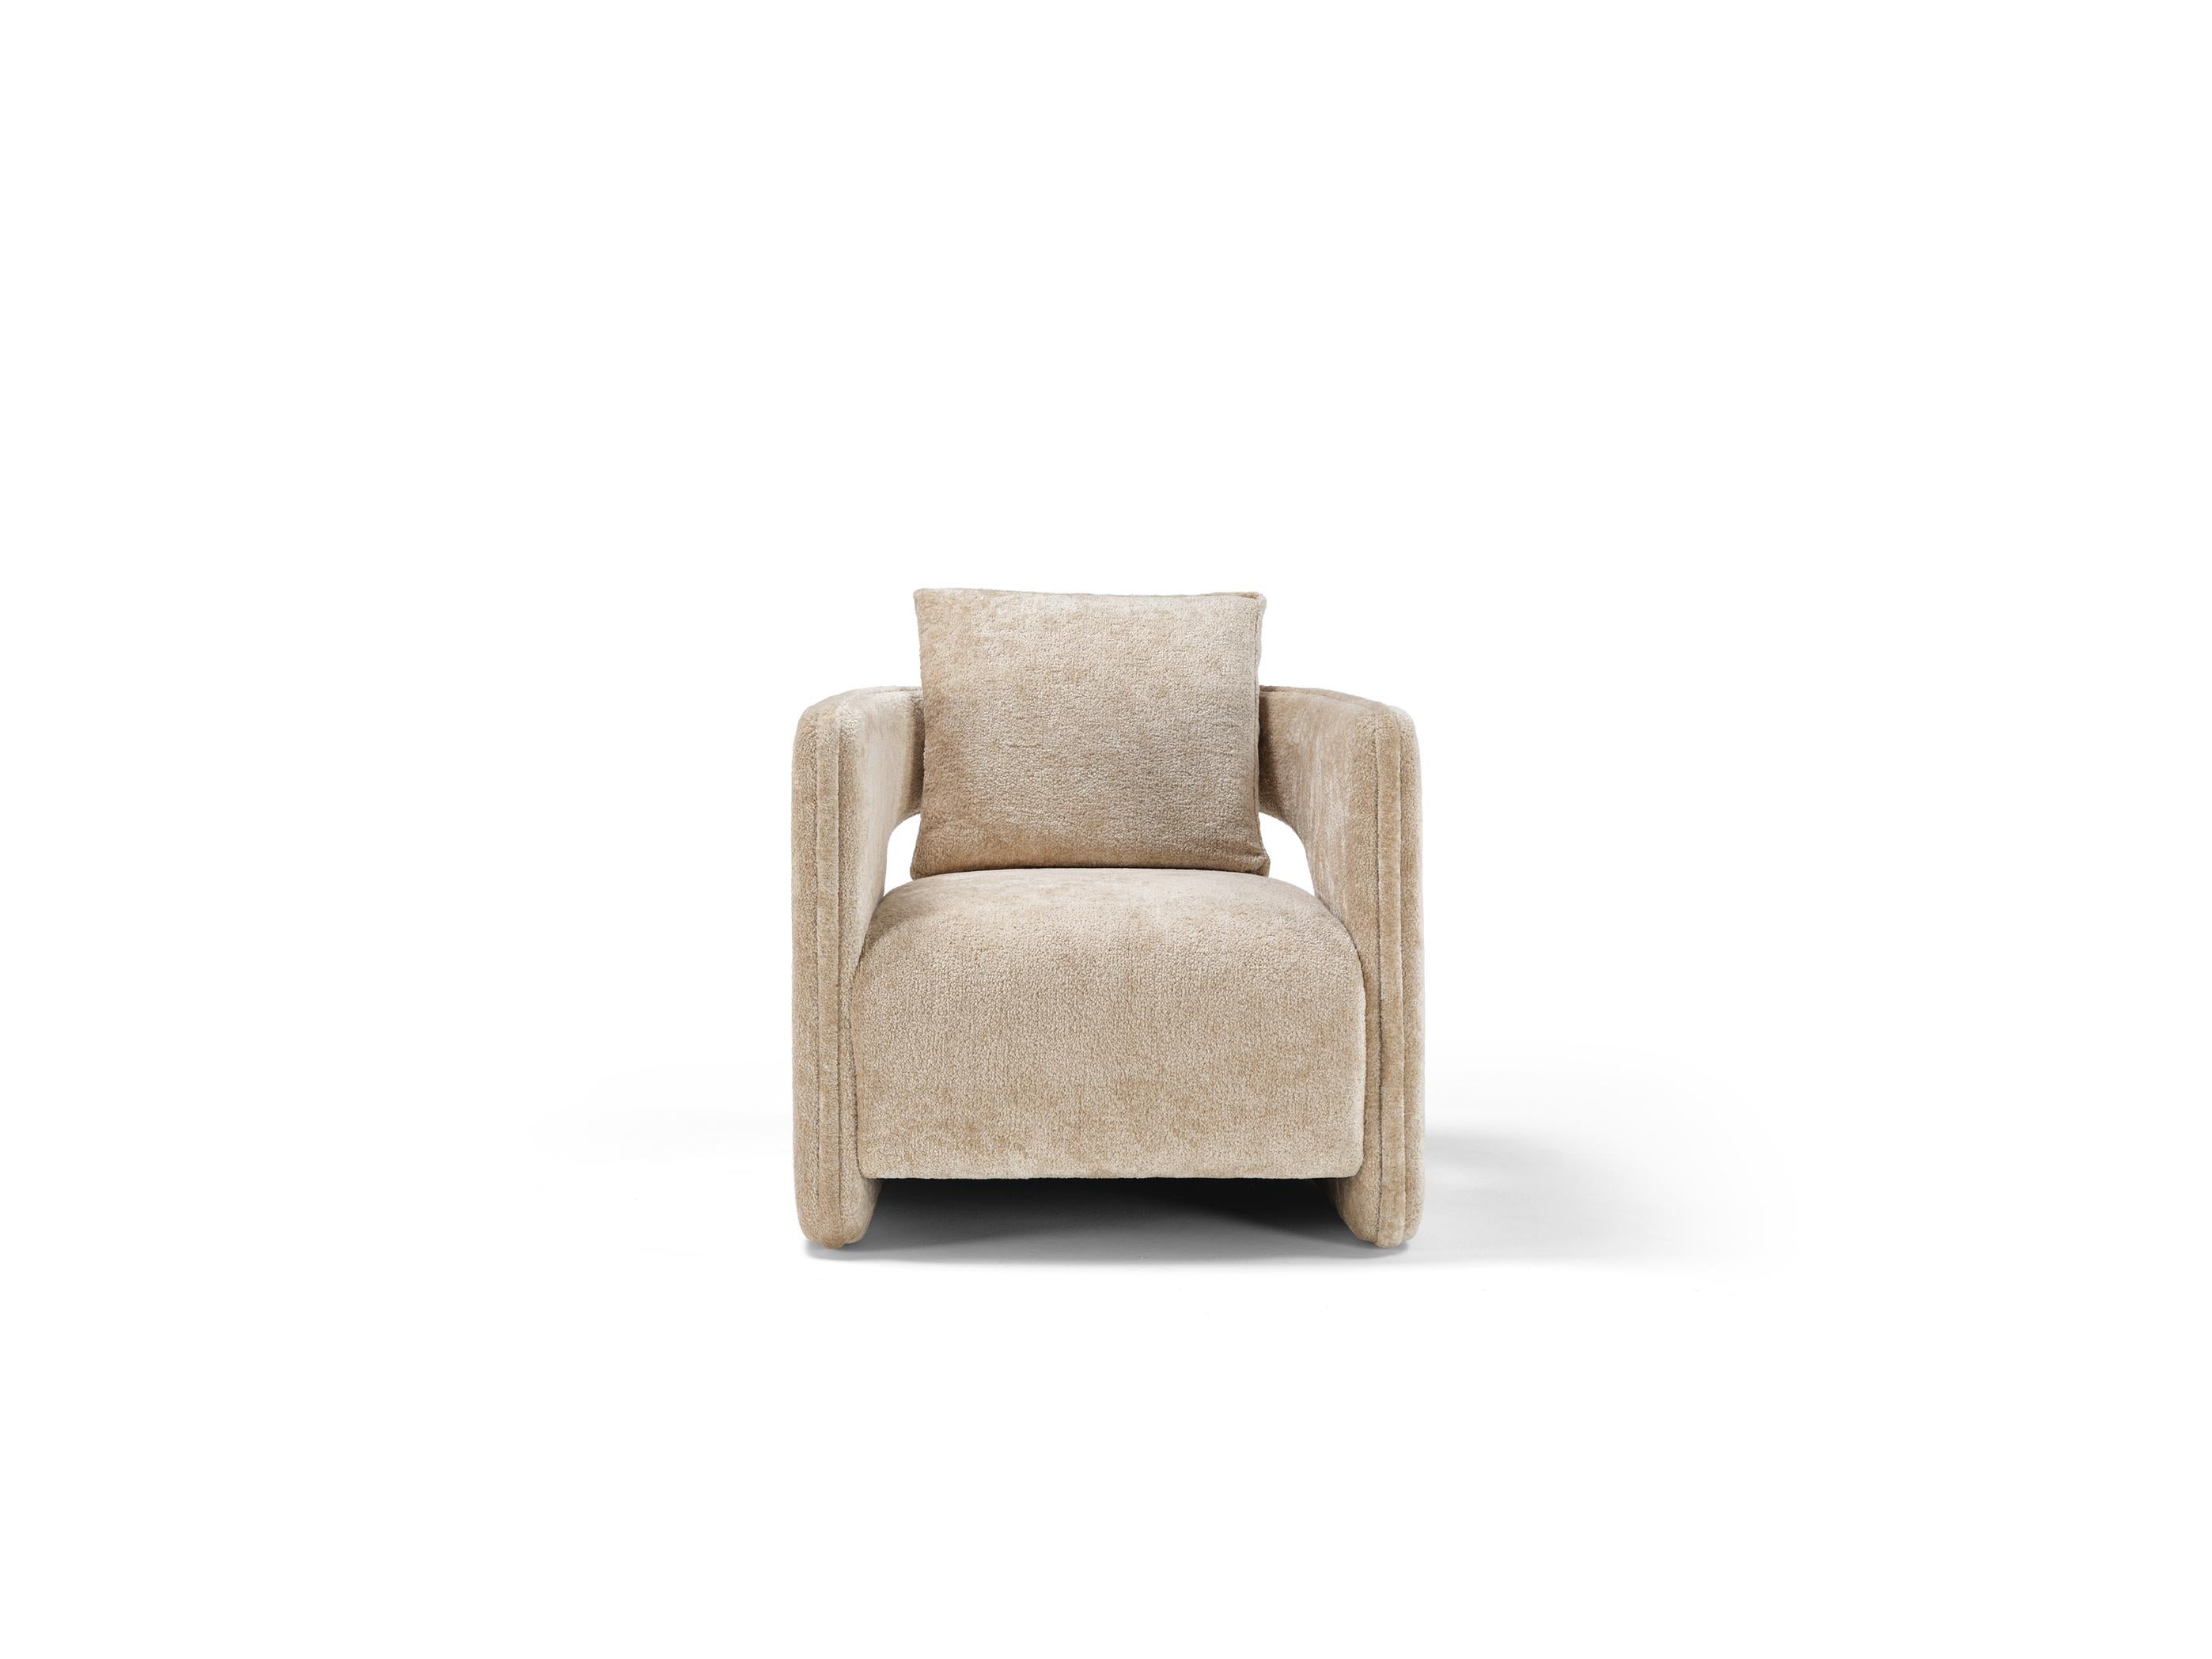 Le design moderne et consensuel de LEWIS en fait le fauteuil idéal pour toutes les pièces. Il peut être tapissé de tissus contrastés pour un résultat plus audacieux ou en utilisant le même tissu pour des styles classiques.
Lewis se démarquera dans